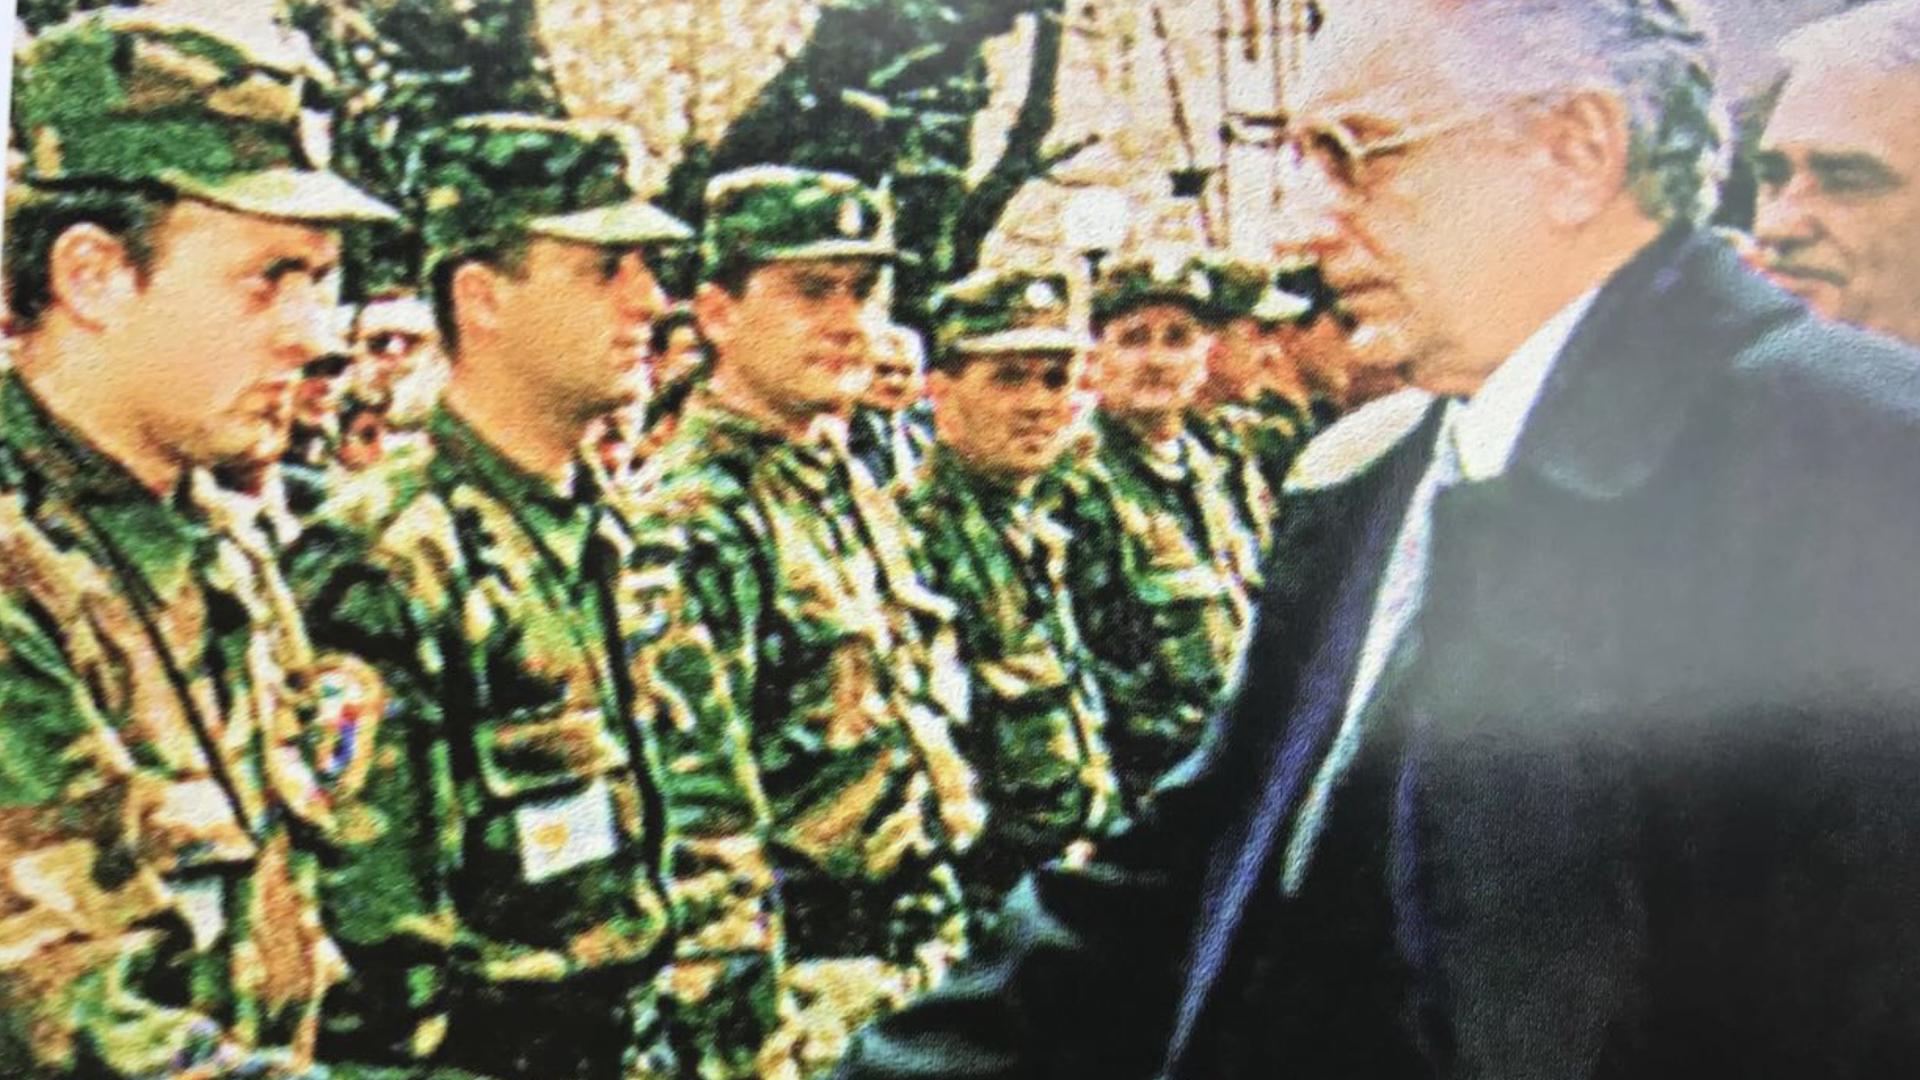 Pred Oluju
Predsjednik Franjo Tuđman obilazio je zapovjedništva. Nekić je 1995. brigadir HV-a i zapovjednik 8. domobranske pukovnije